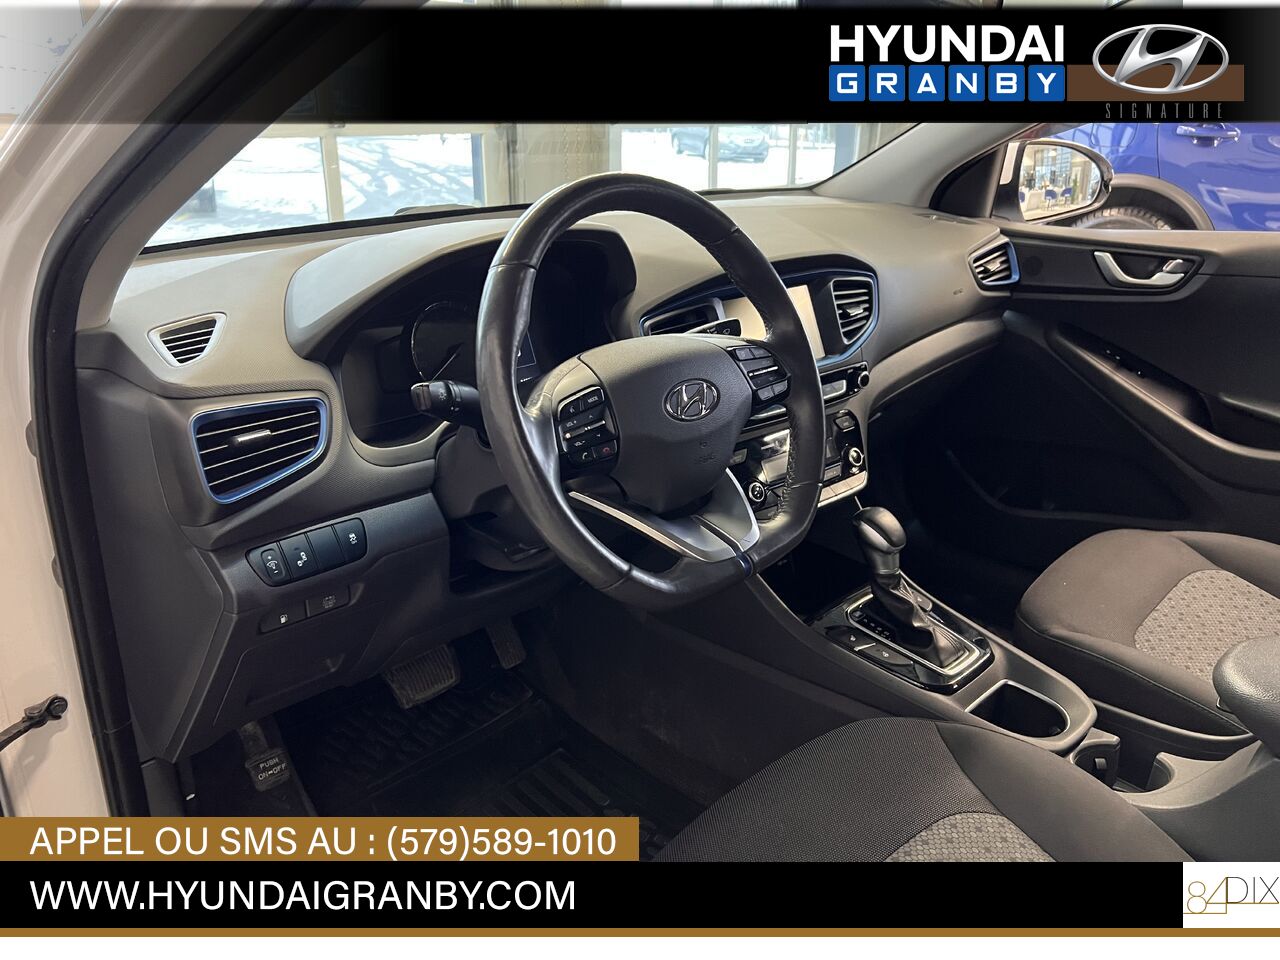 Hyundai Ioniq hybride 2017 Granby - photo #8